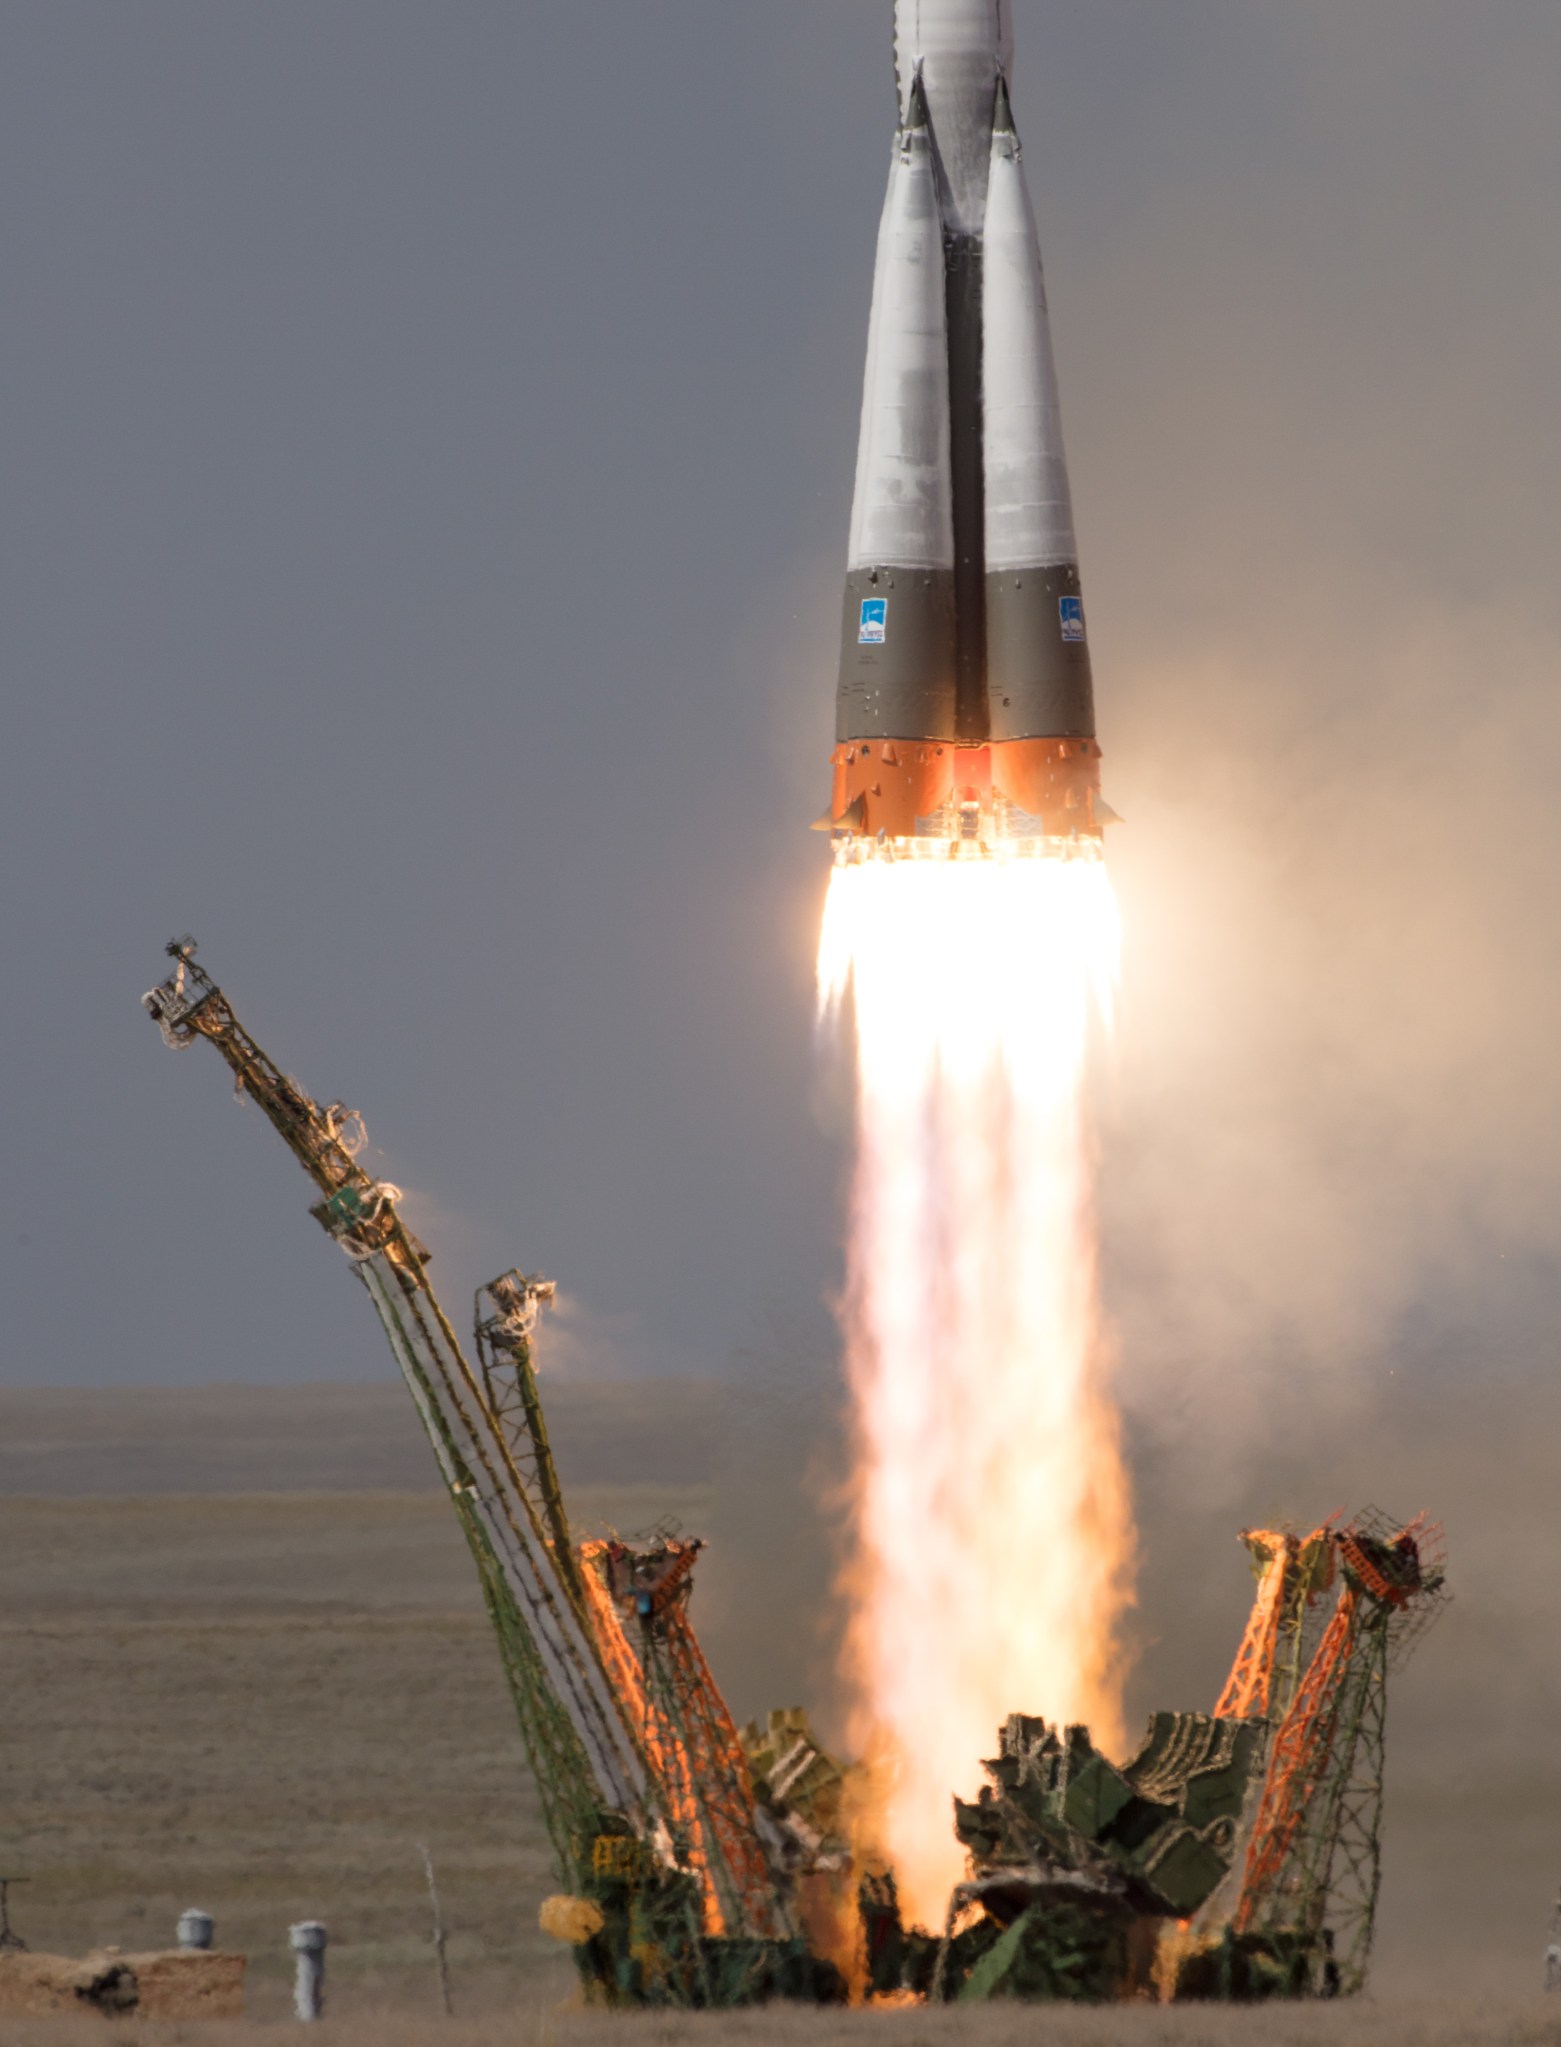 Liftoff of Soyuz